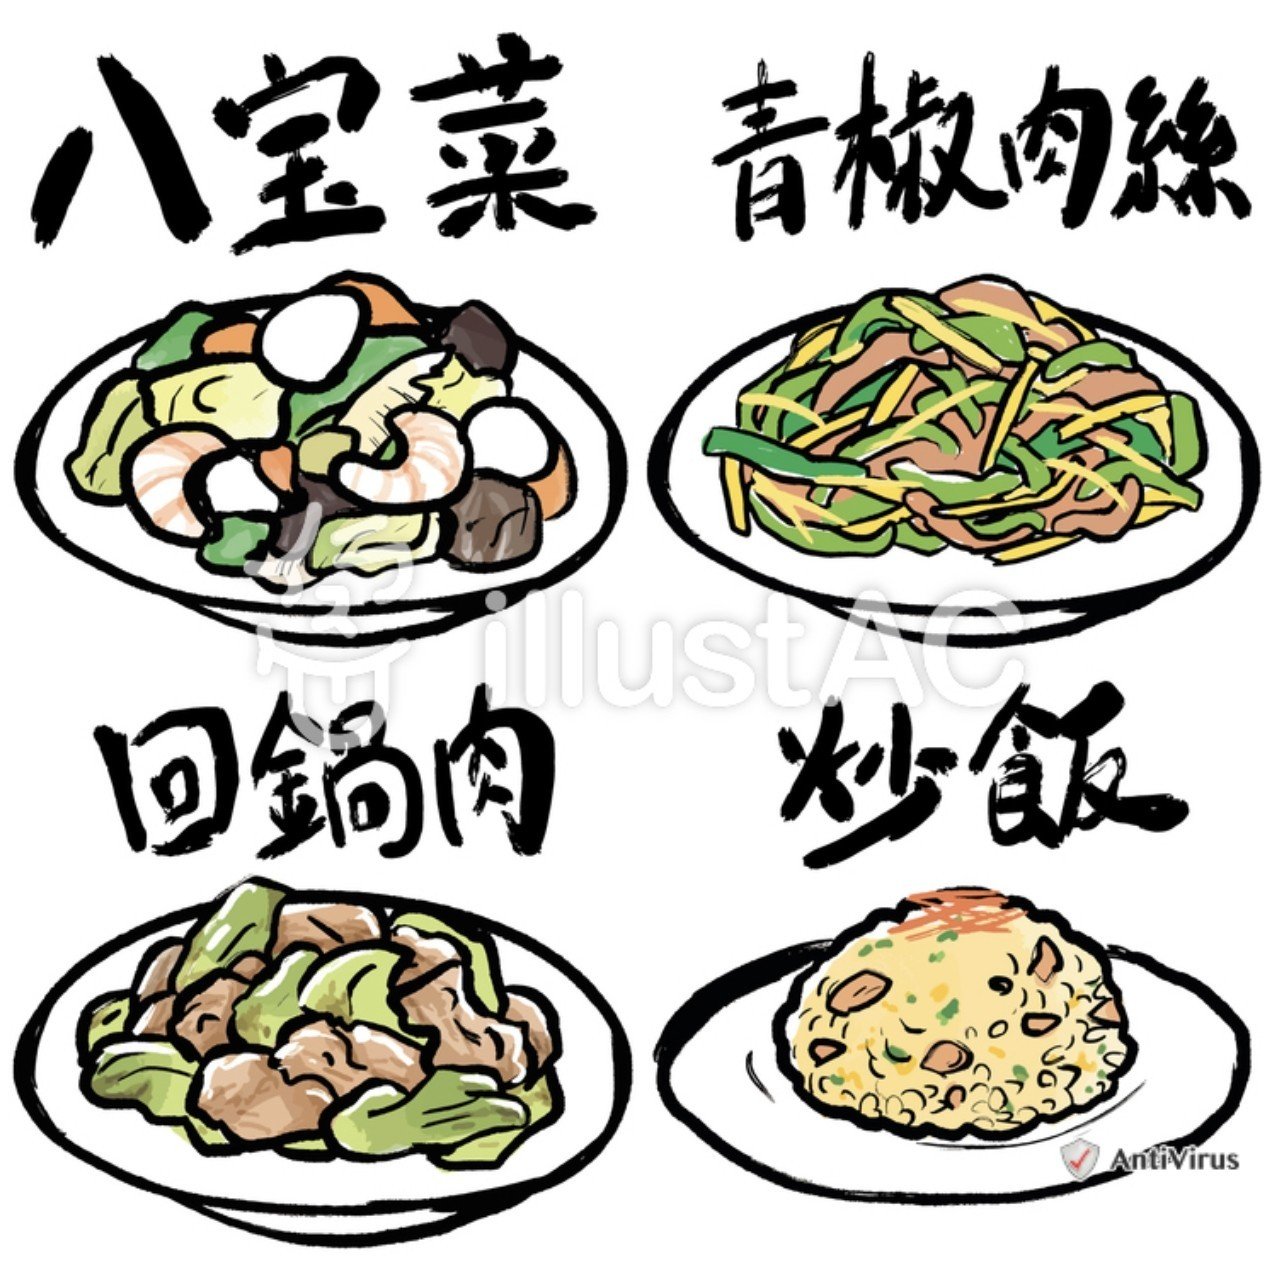 最近無性に中華料理が食べたい と思ったので中華料理のイラスト素材を描いてみました 私が一番好きなのは回鍋肉です 下記のリンクで無料ダウンロードできます Www Ac Illust C タコチキ 実録漫画や4コマなどを描いています Note